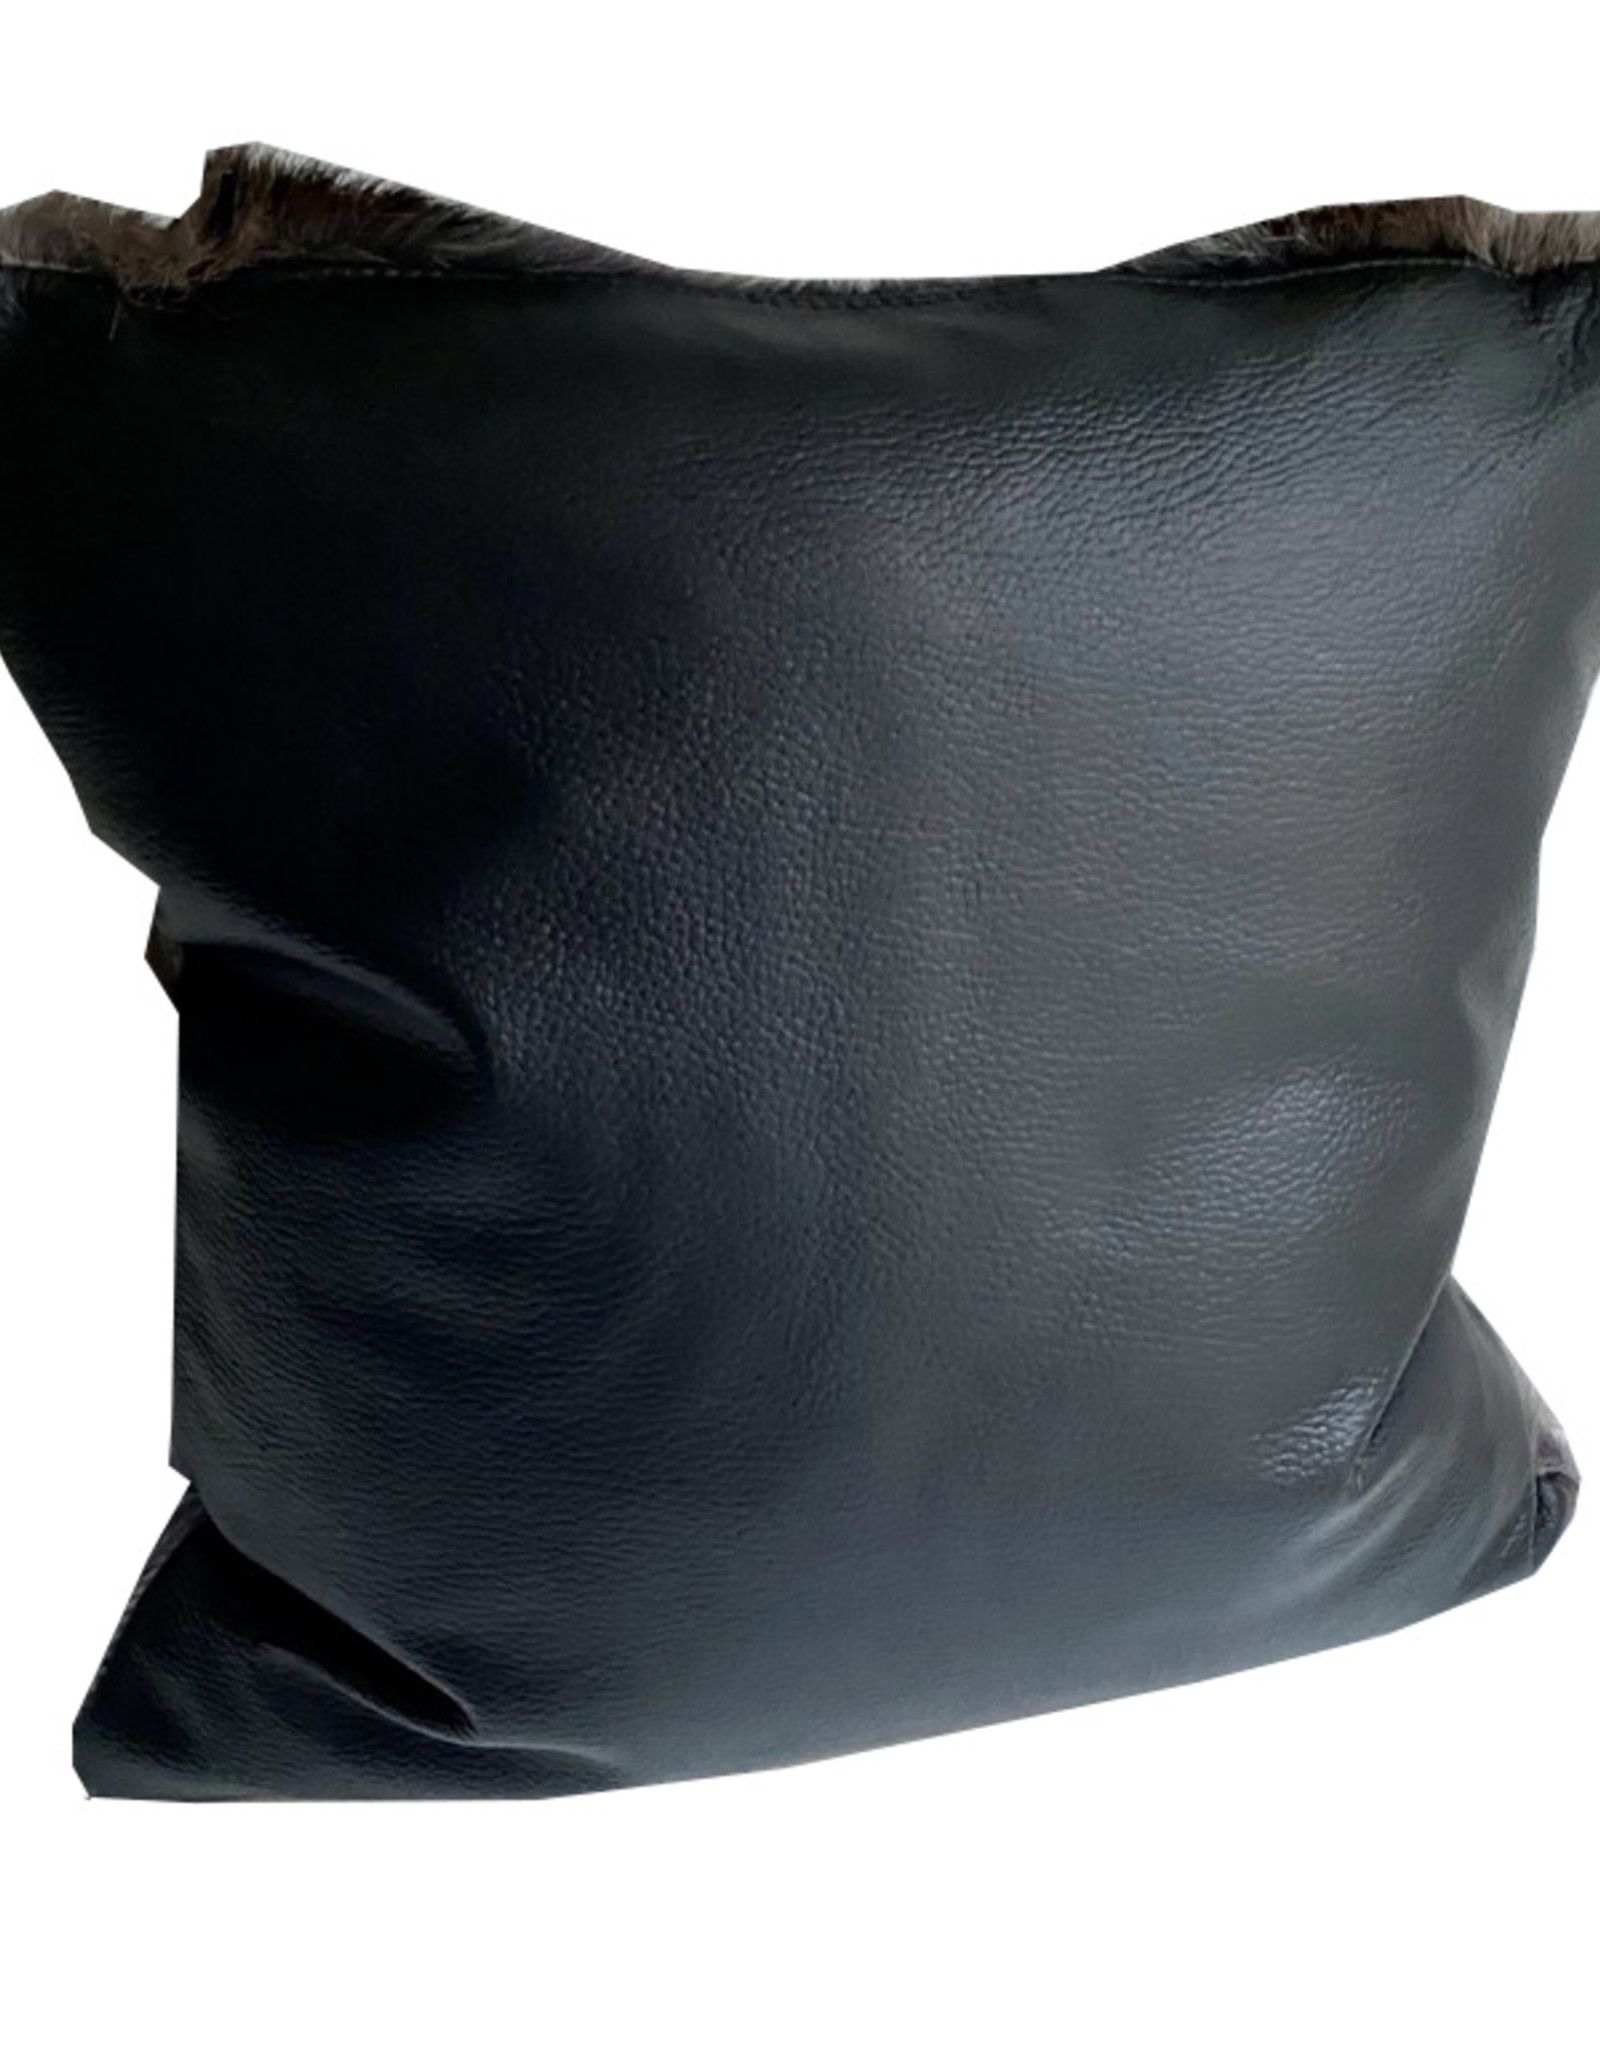 Springbok fur cushion in a great grey